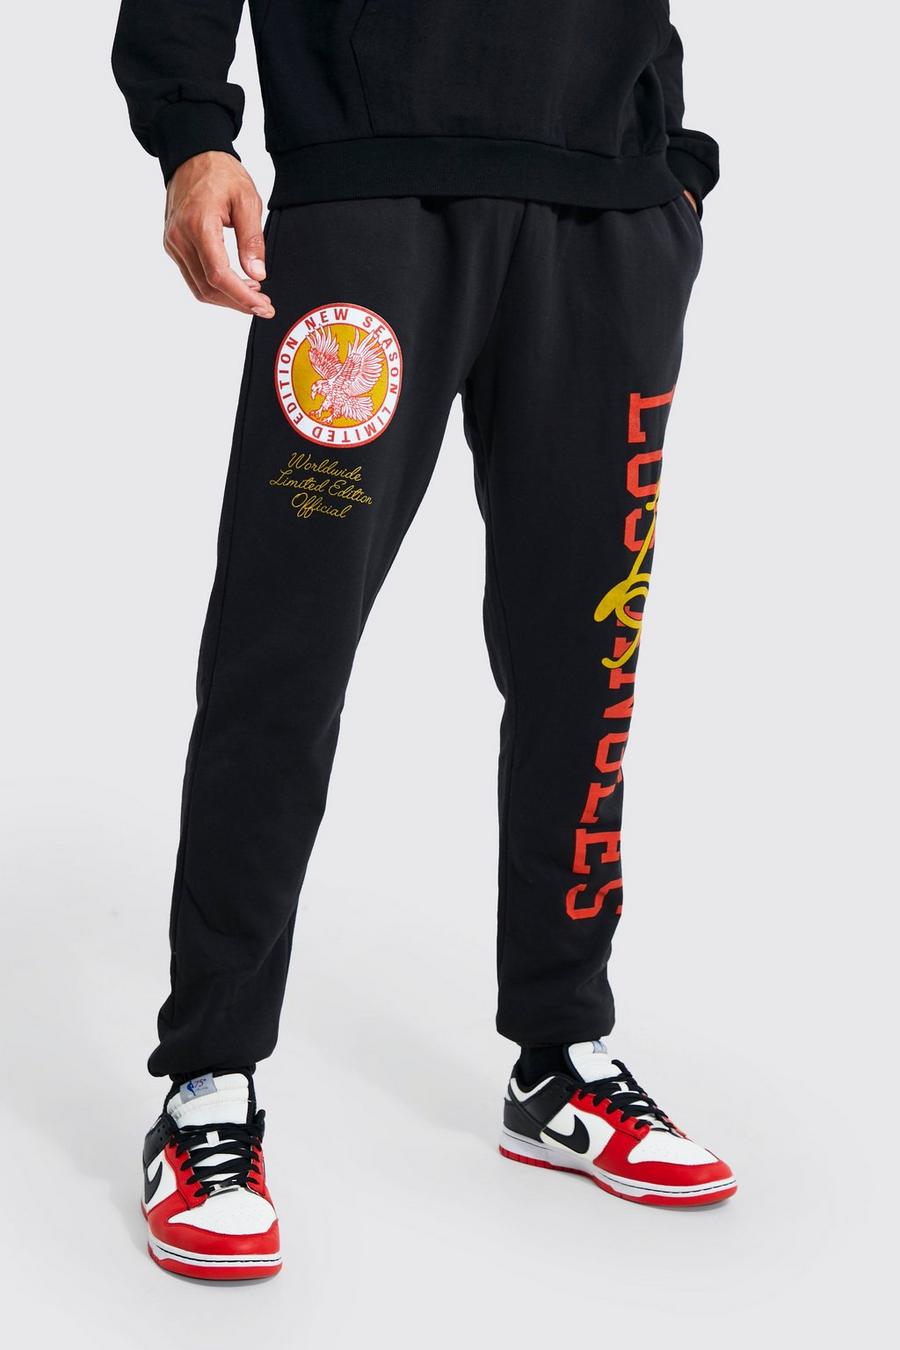 Pantalón deportivo Tall con estampado gráfico universitario de Los Angeles, Black negro